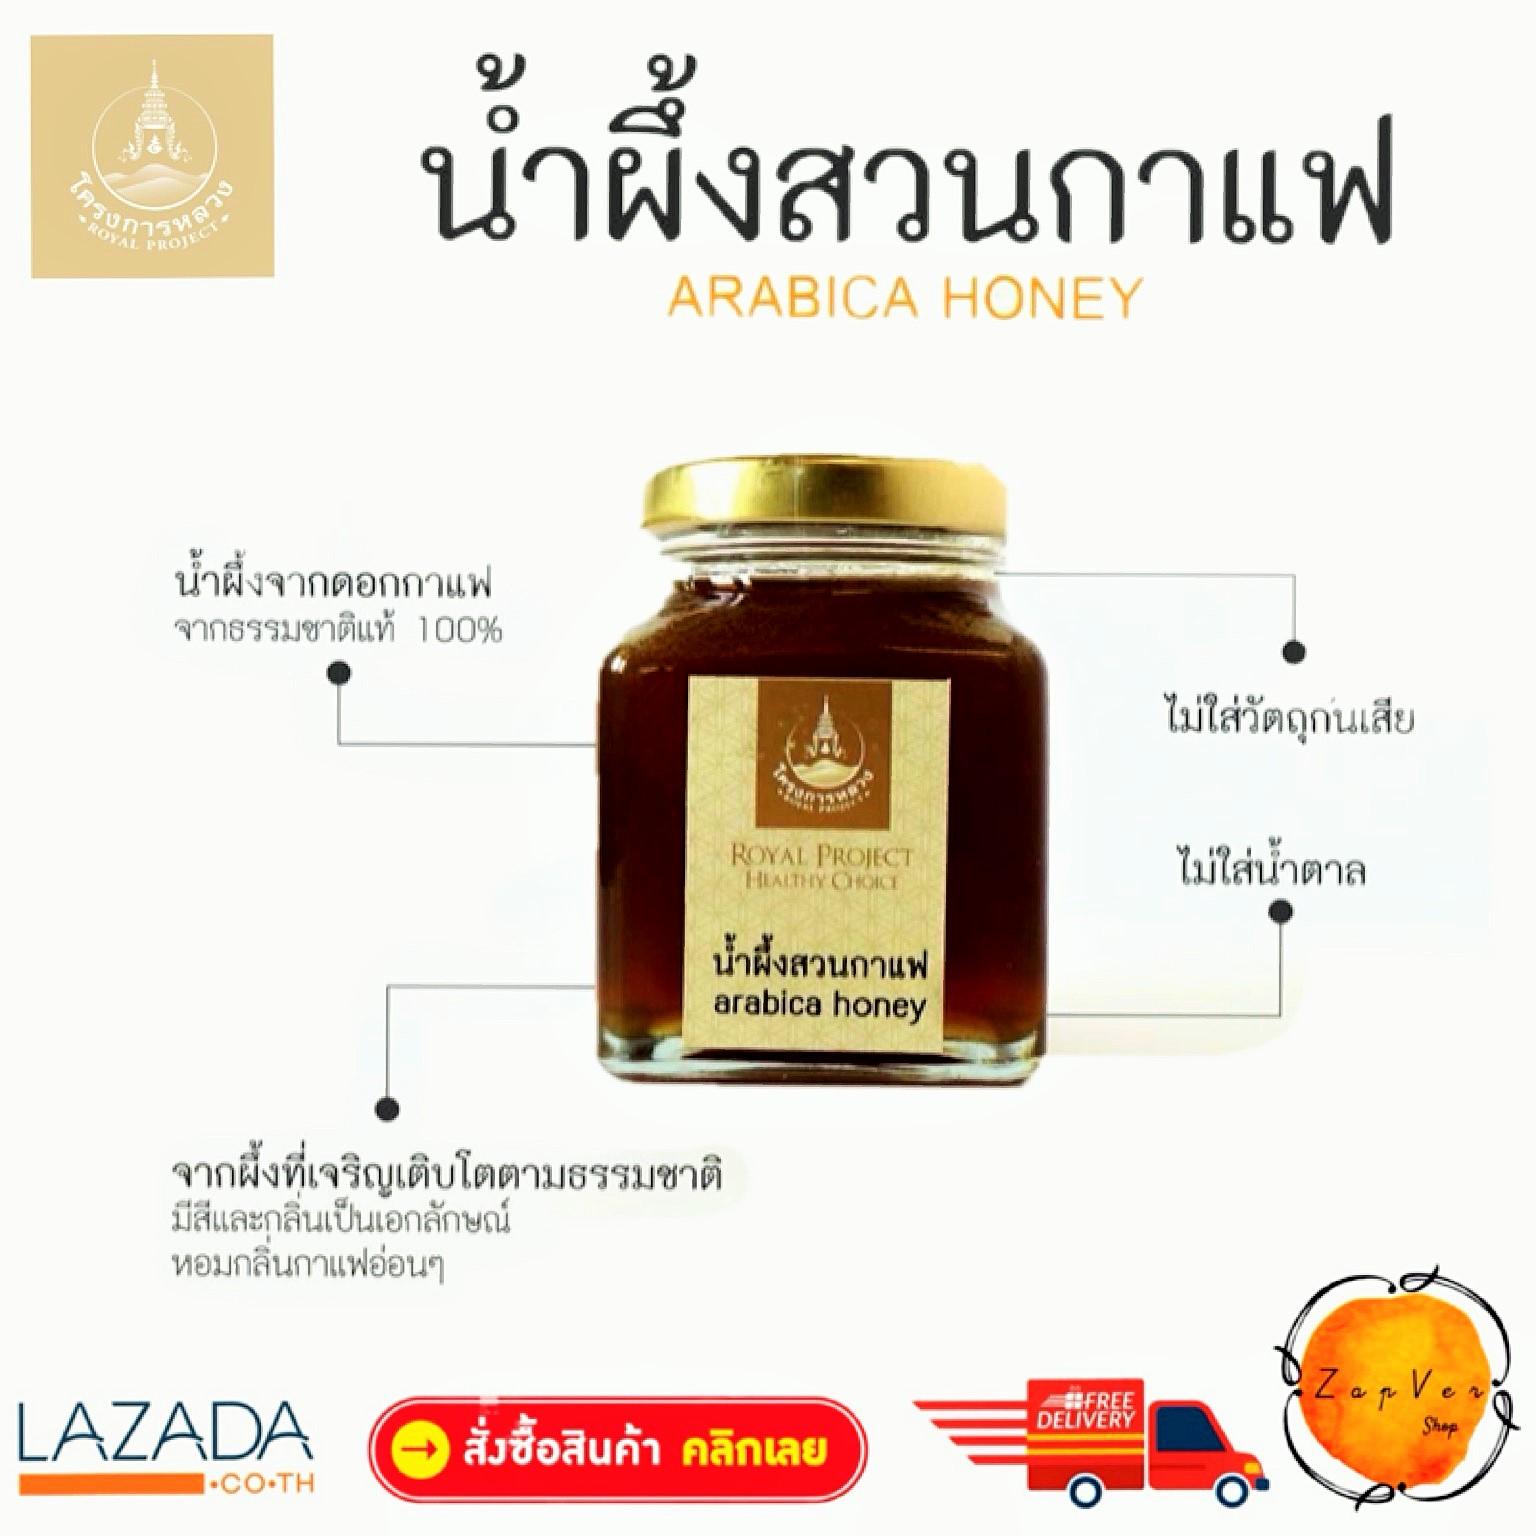 น้ำผึ้ง สวนกาแฟ โครงการหลวง น้ำผึ้งในสวนกาแฟ  น้ำผึ้งดอกกาแฟอาราบิก้า เพื่อสุขภาพและความงาม น้ำผึ้งแท้ 100% ขนาด 250 กรัม Honey in the coffee garden  Arabica Coffee Flower Honey 100% Product of Royal Project foundation Thailand